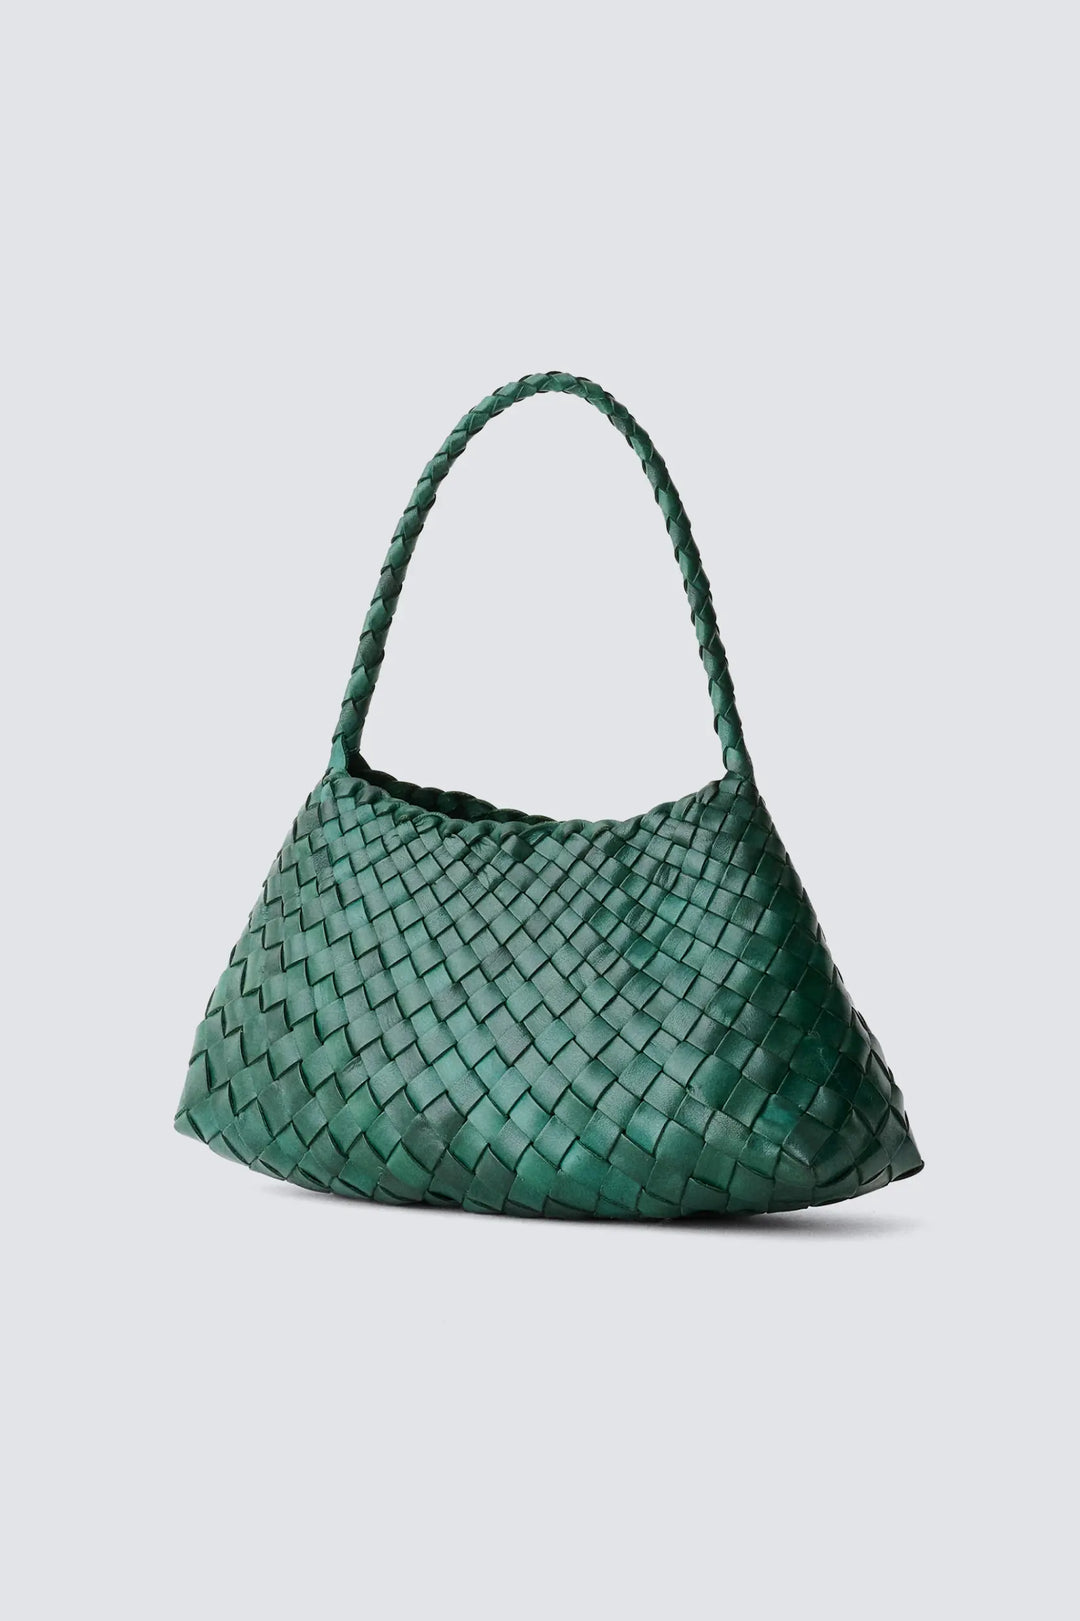 Dragon Diffusion - Woven Leather Bag Handmade - Rosanna Forest GreenDragon Diffusion - Woven Leather Bag Handmade - Rosanna Forest Green